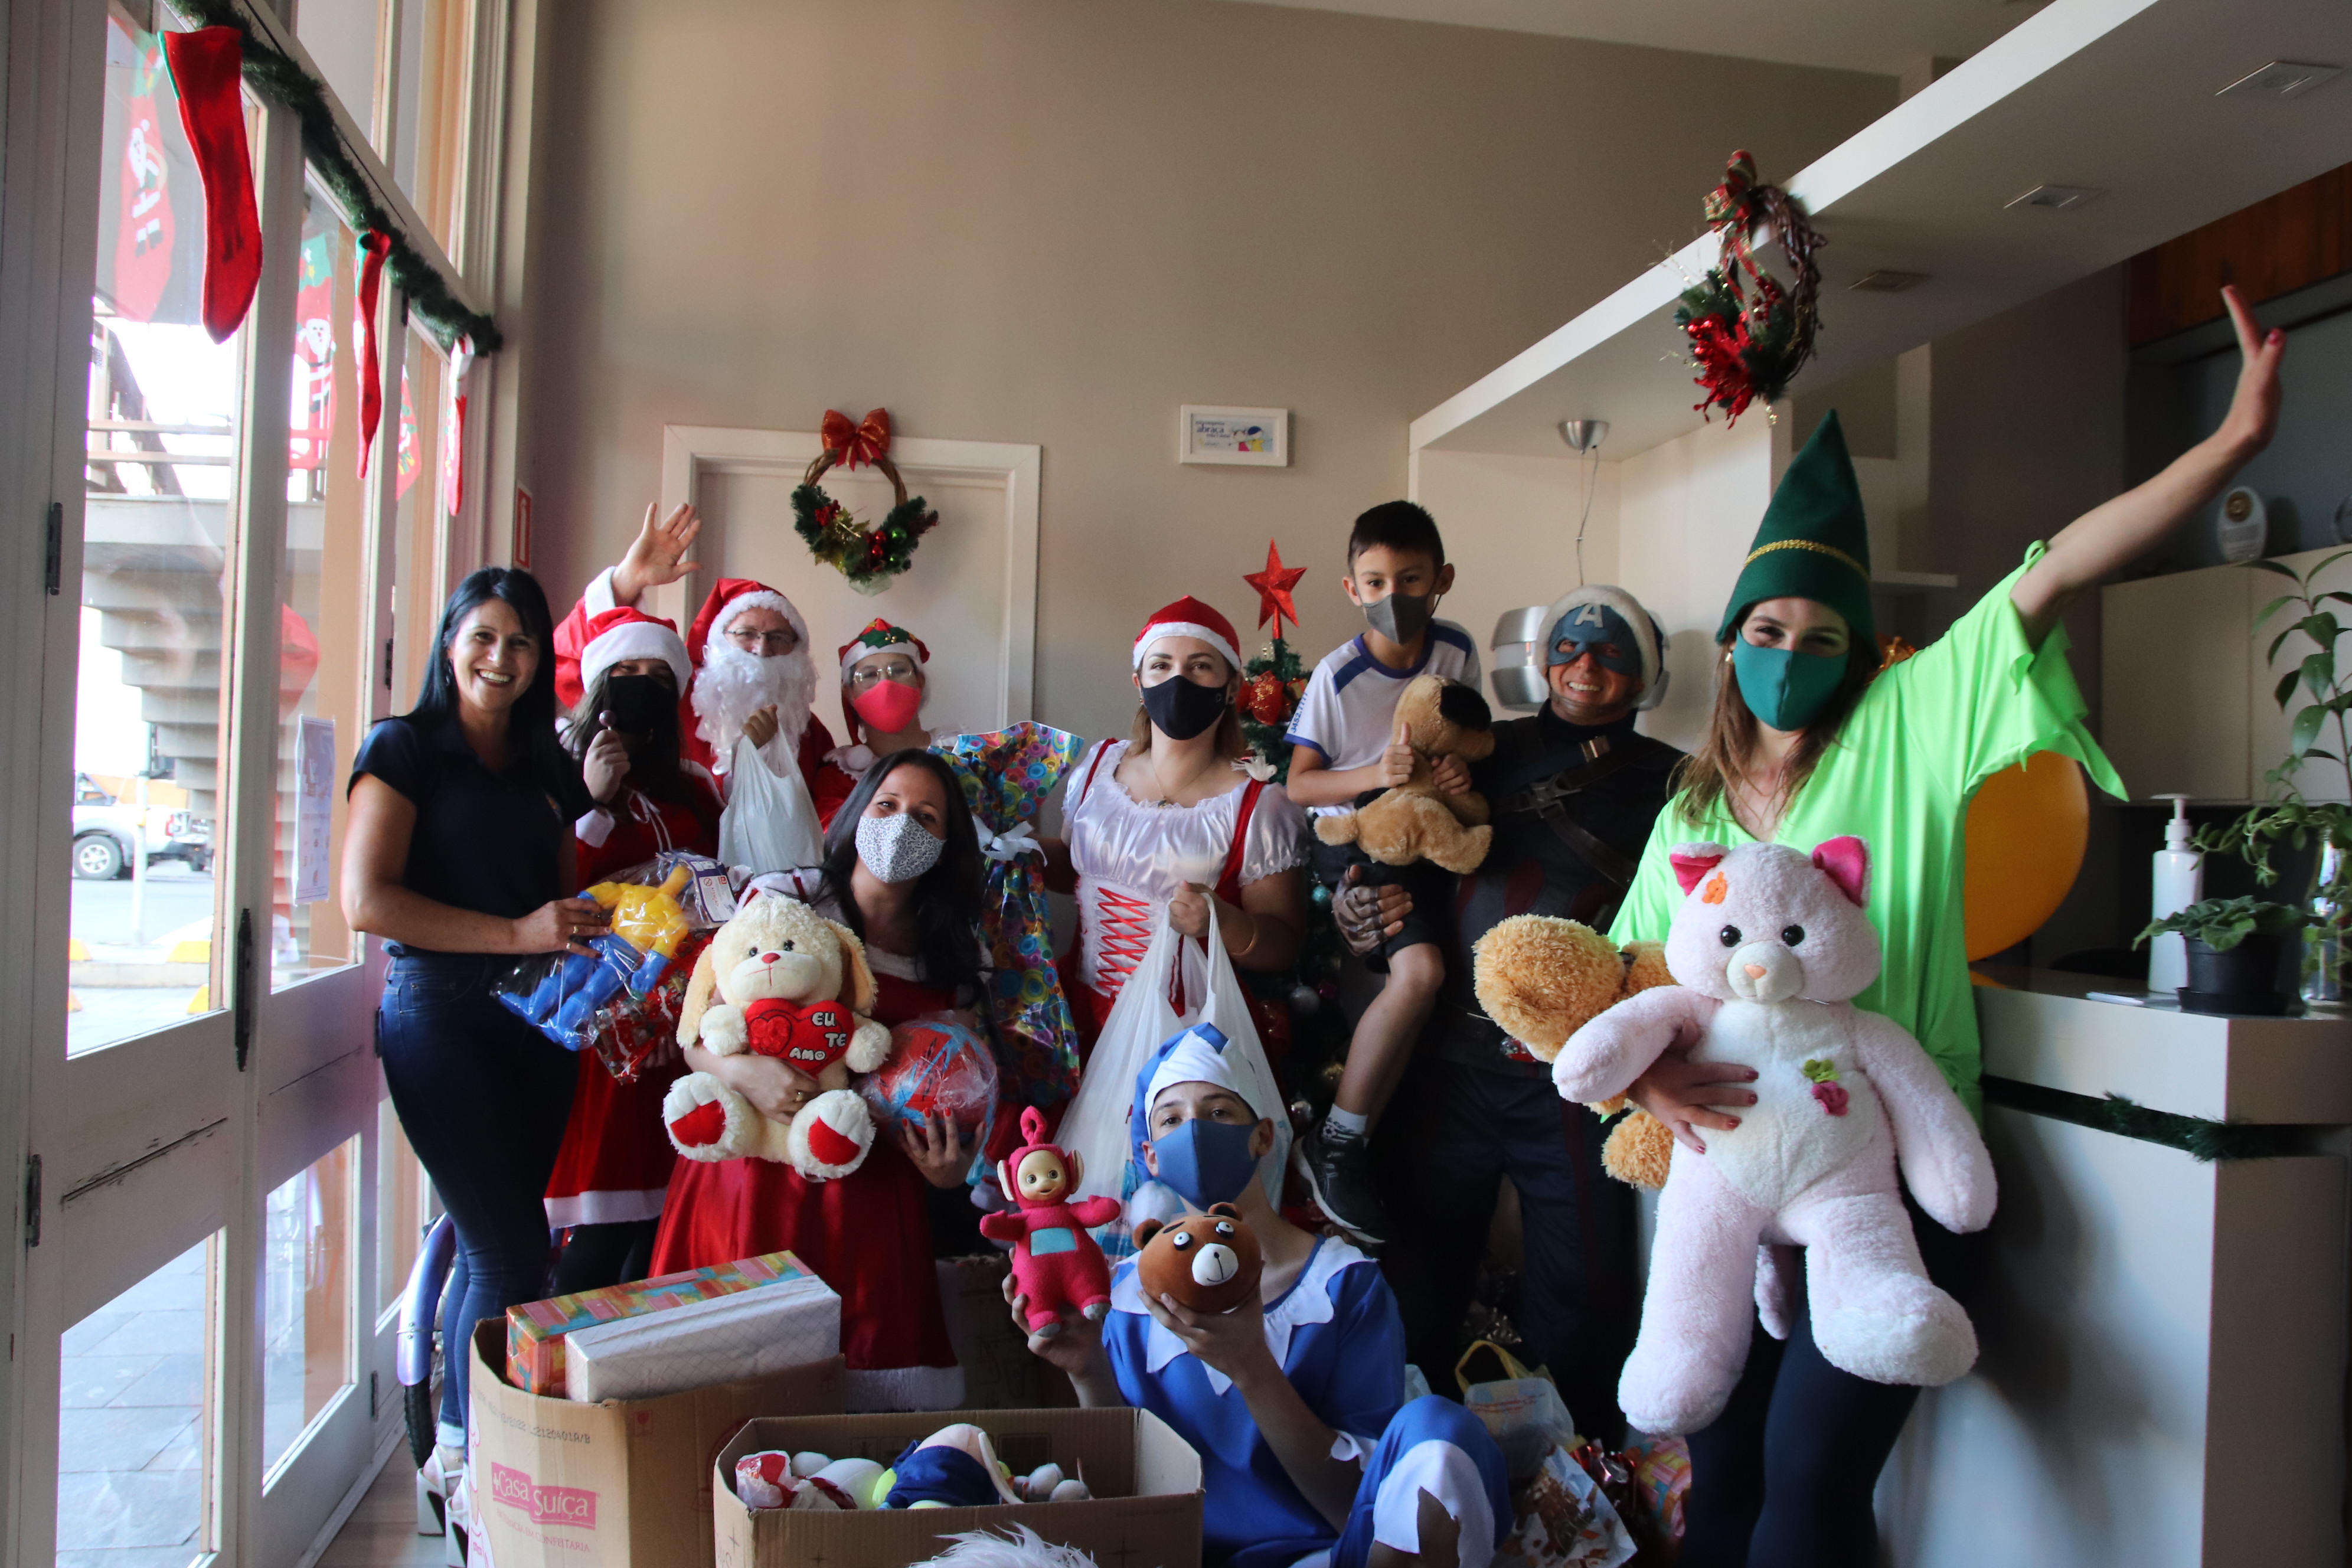 Associação Anjos Unidos recebe brinquedos arrecadados com a promoção “Eu ajudo Papai Noel” da Rádio Difusora